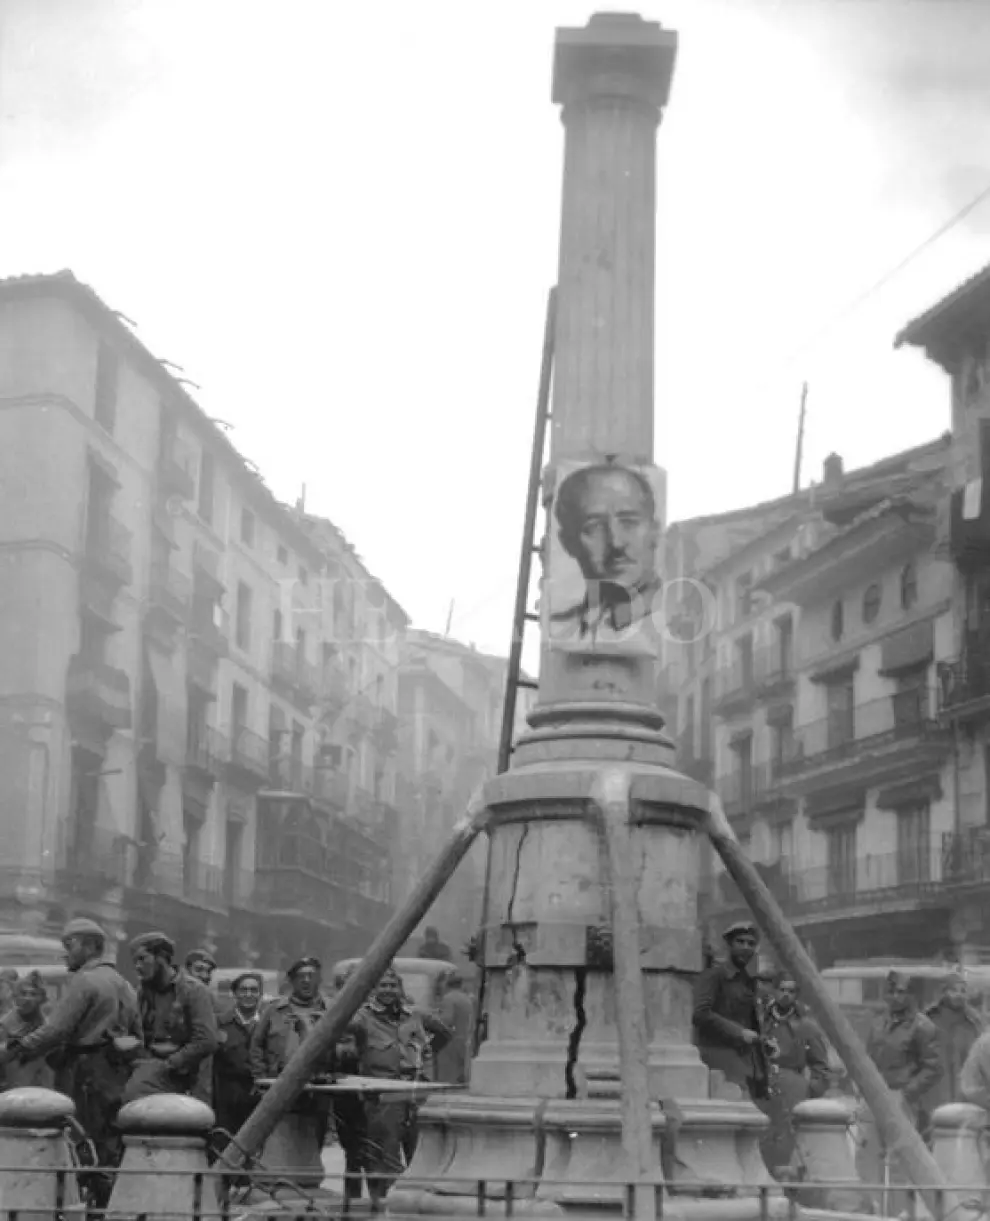 Así encontraron las tropas franquistas el simbólico monumento del Torico cuando entraron en Teruel. La columna sufrió una violenta explosión durante la batalla y al quedar dañada tuvieron que colocar varias vigas de madera a modo de apuntalamiento.